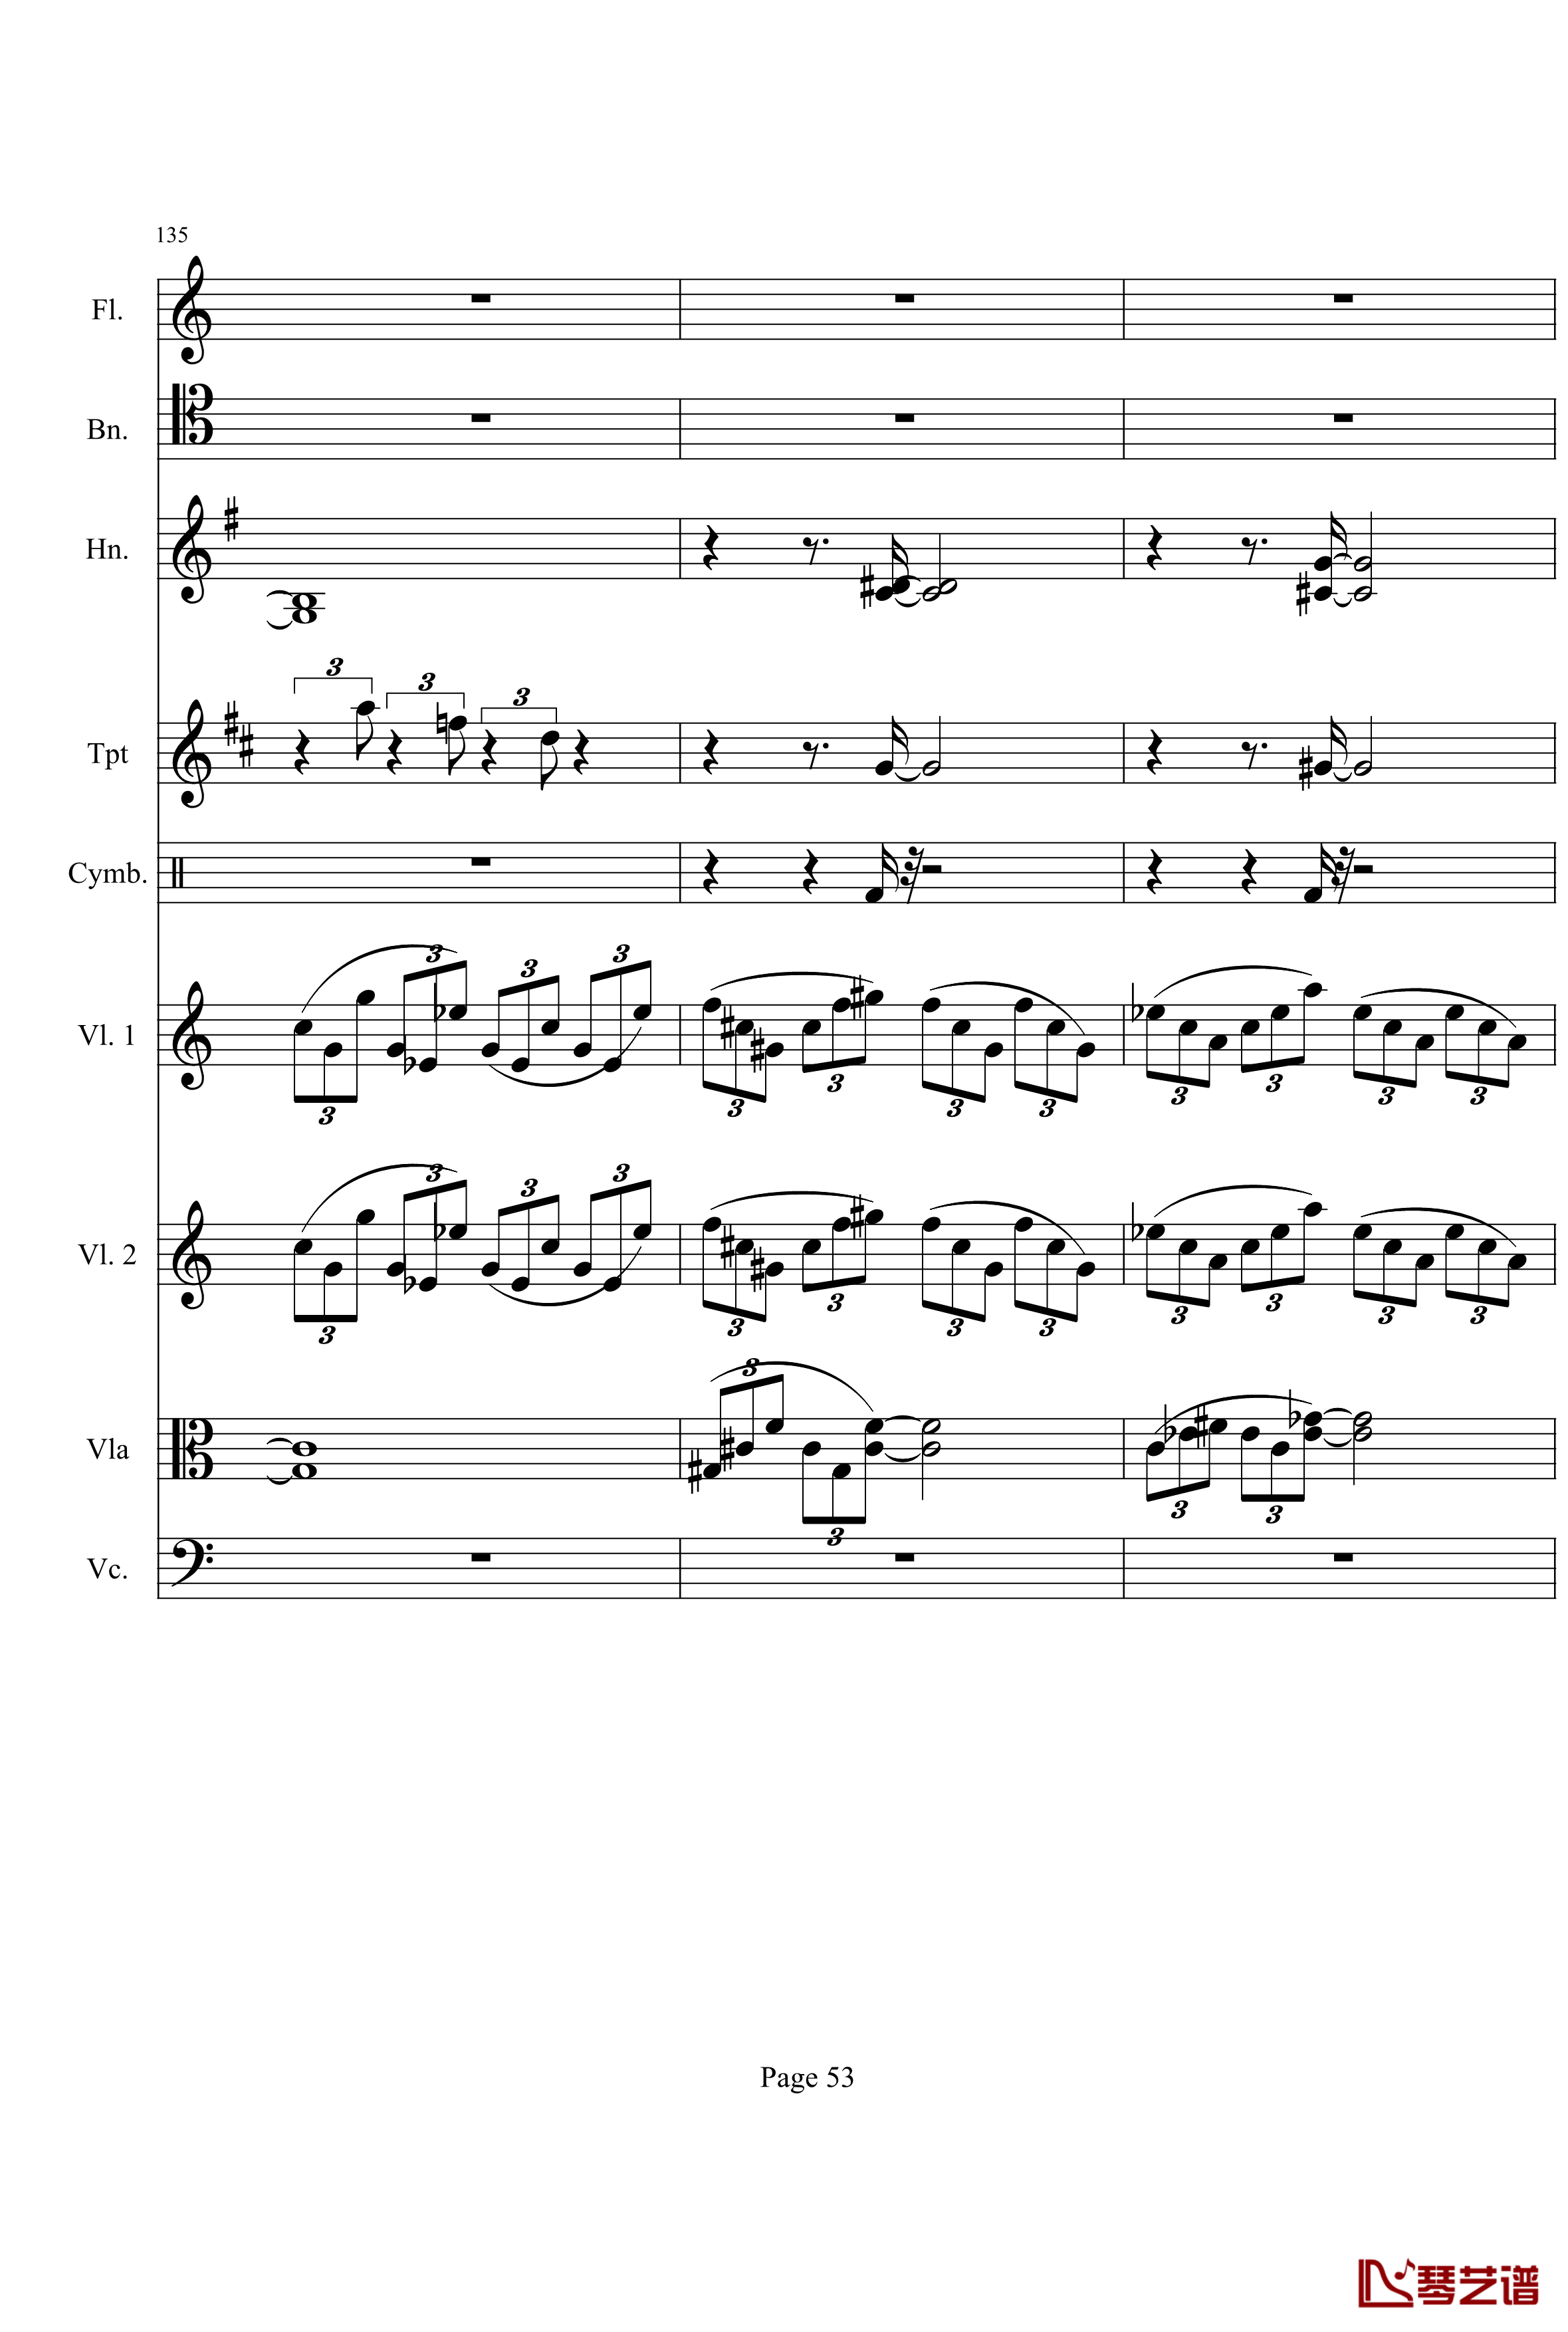 奏鸣曲之交响钢琴谱-第21首-Ⅰ-贝多芬-beethoven53